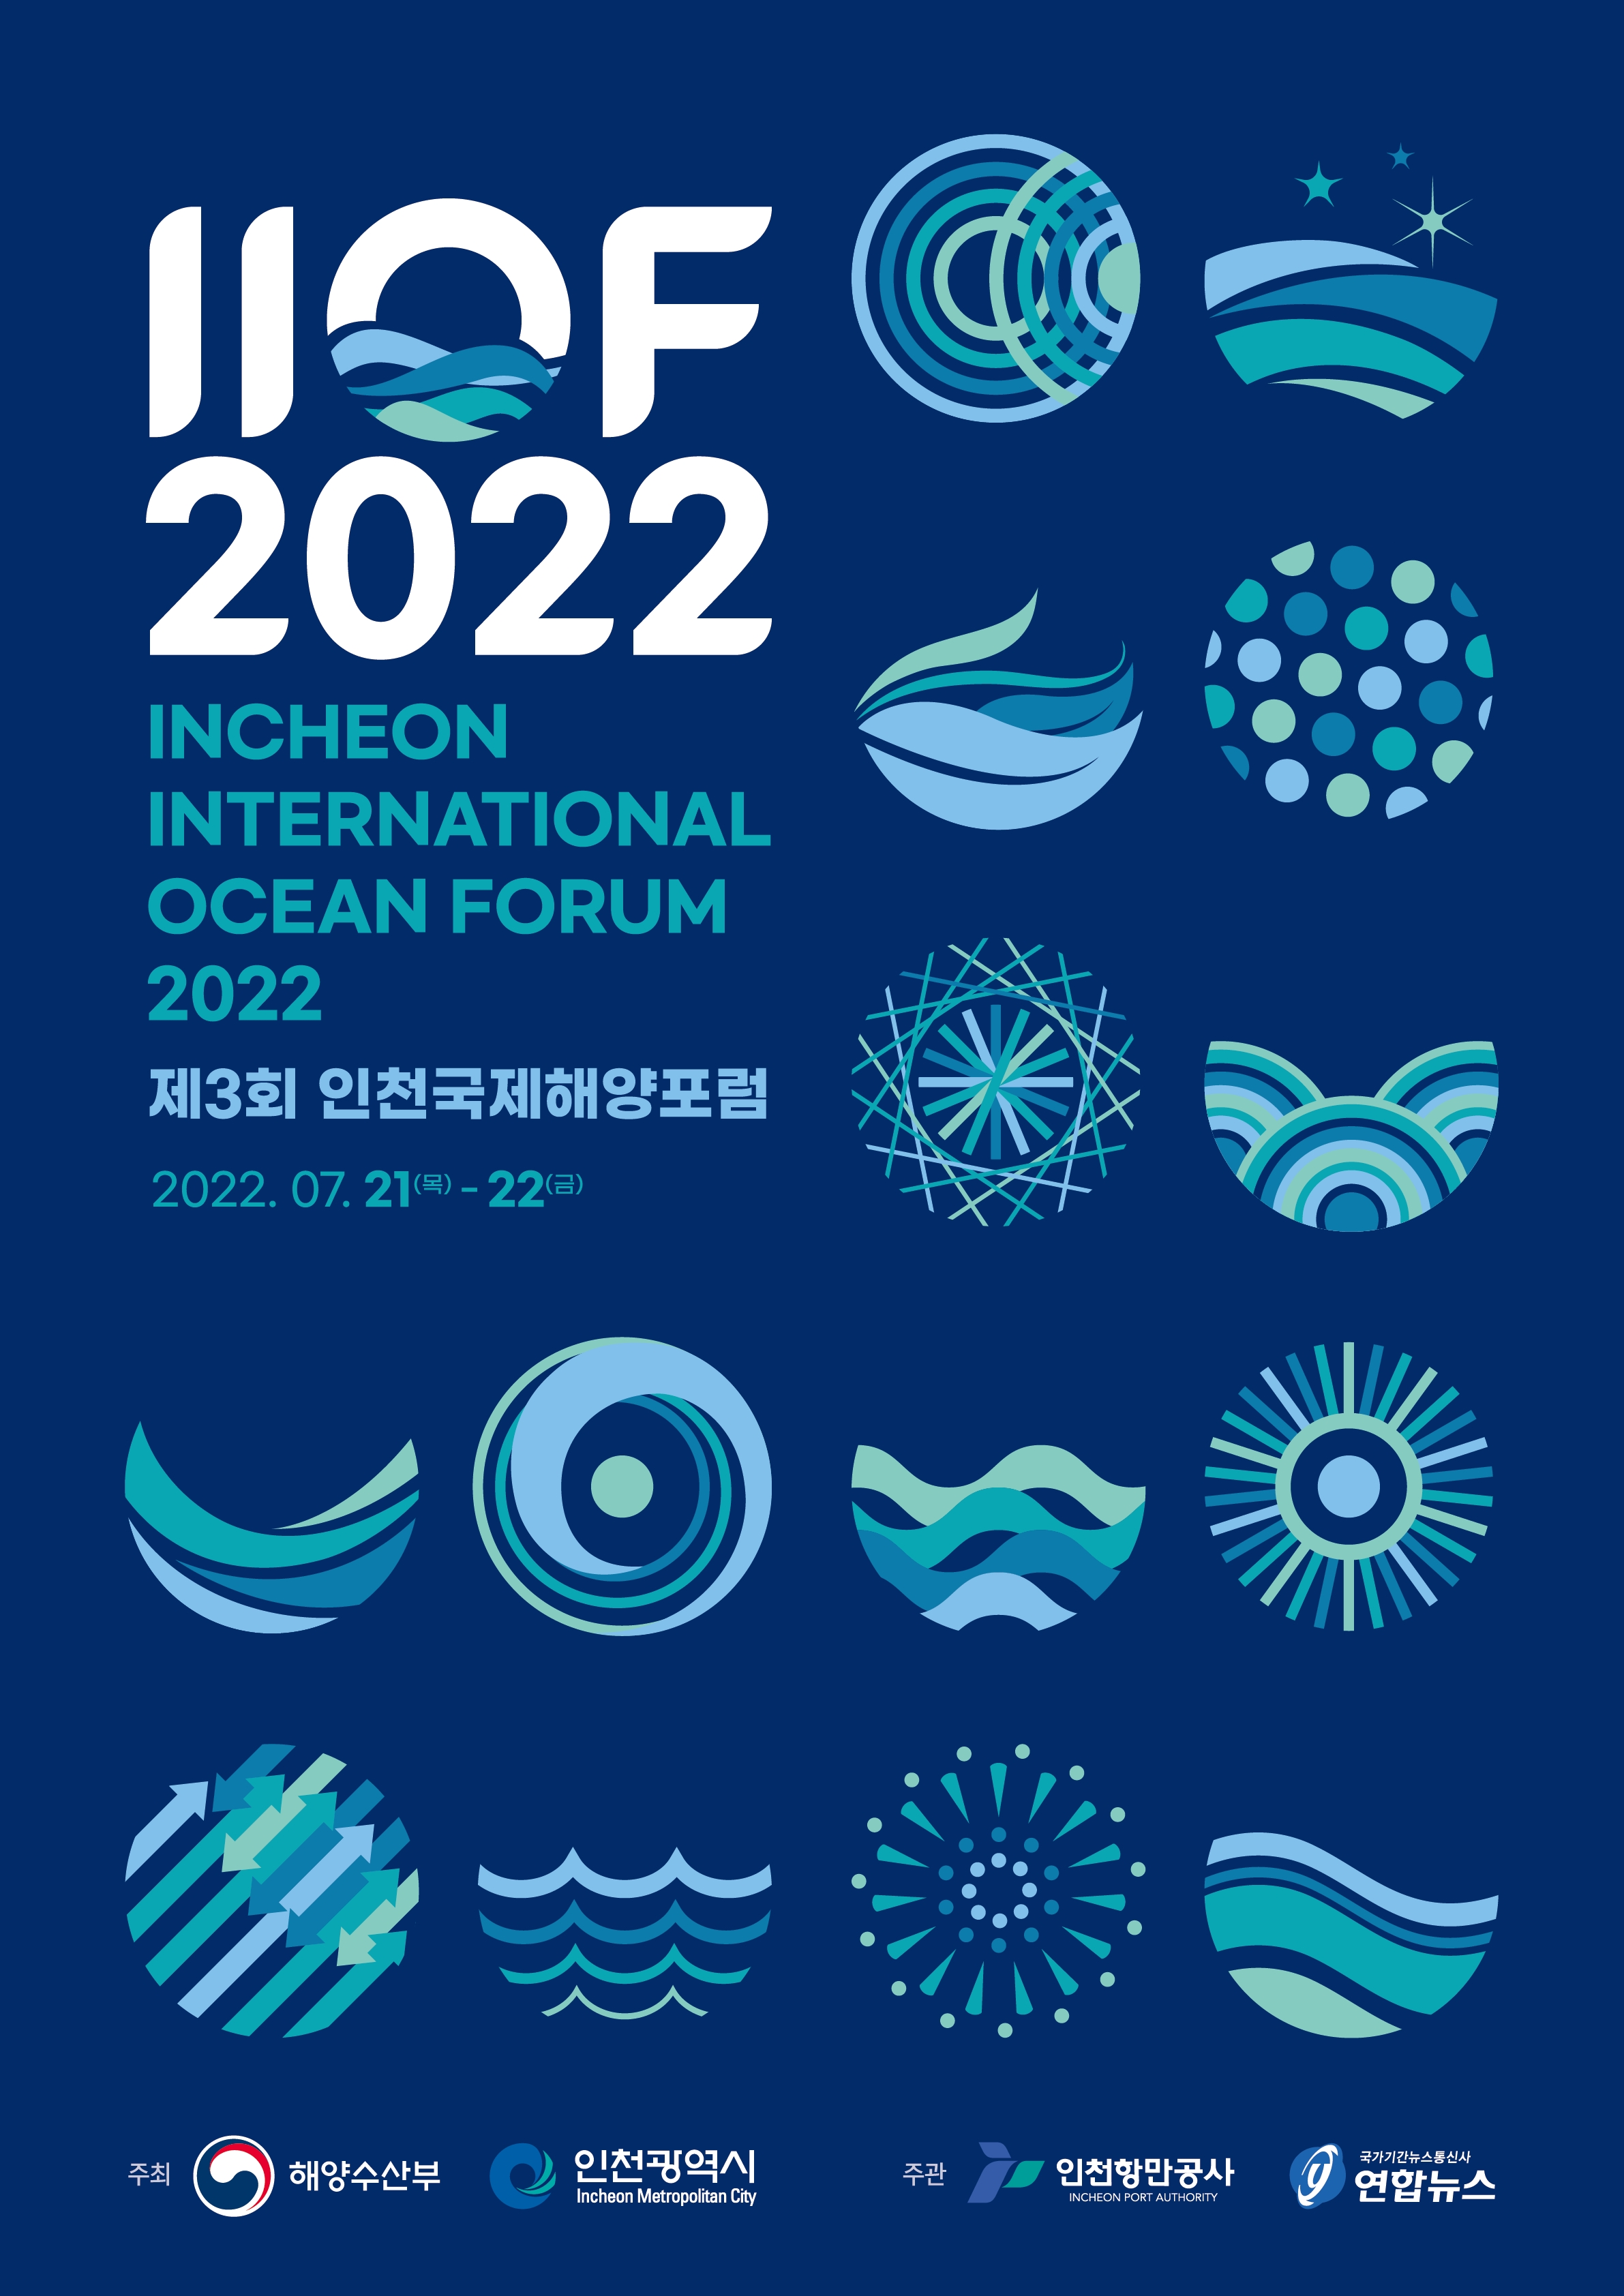 제3회 인천국제해양포럼(IIOF 2022) 안내 포스터.자세한 내용은 아래 참조